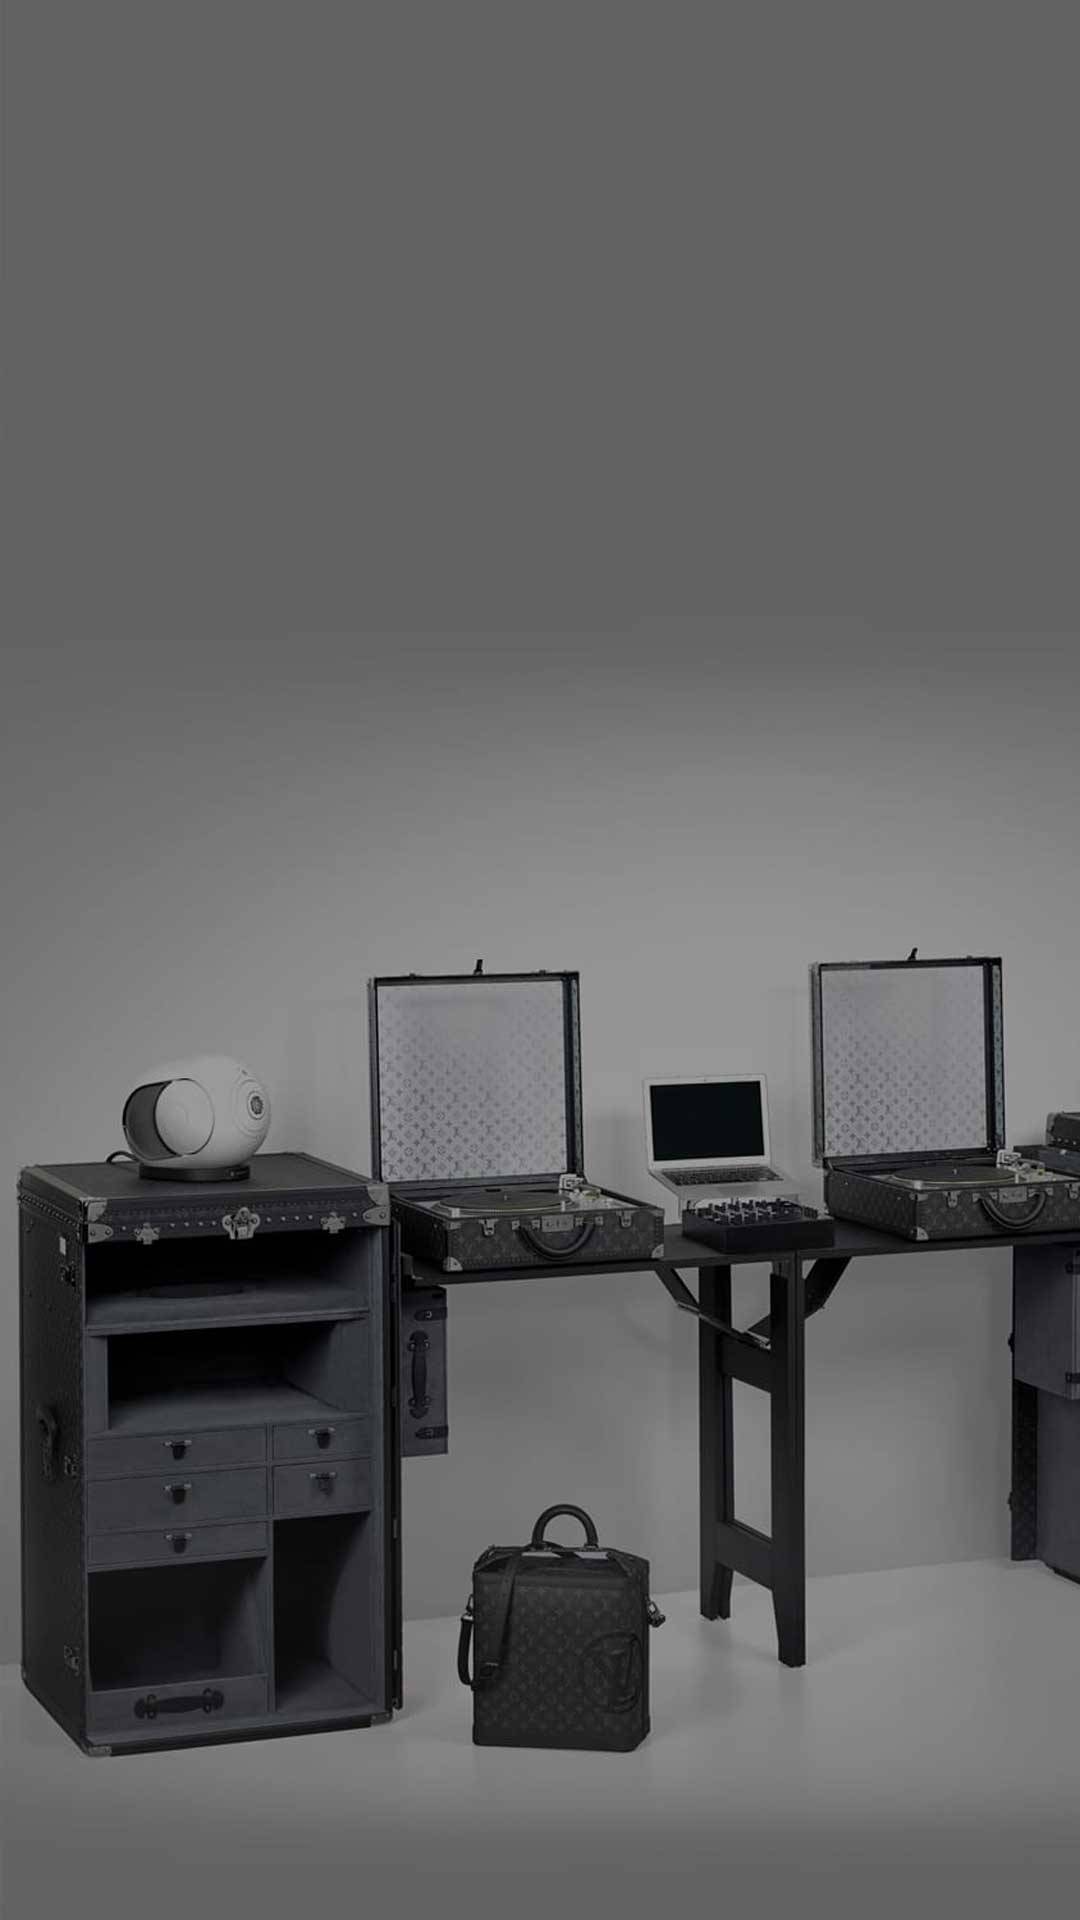 Louis Vuitton Computer Printed Backdrop